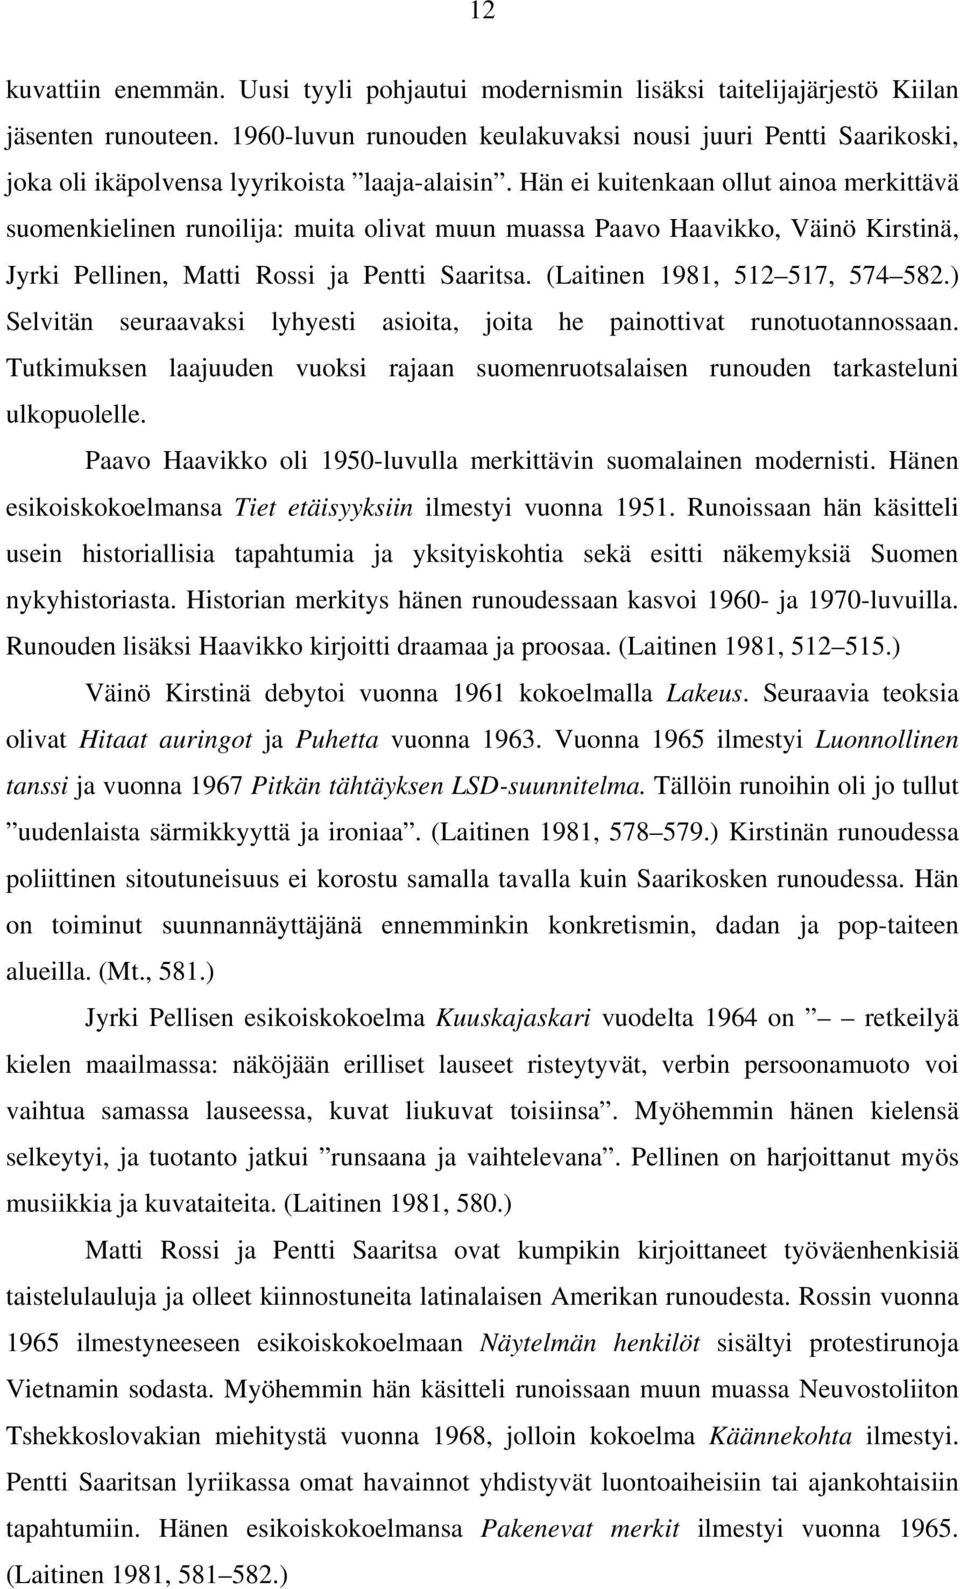 Hän ei kuitenkaan ollut ainoa merkittävä suomenkielinen runoilija: muita olivat muun muassa Paavo Haavikko, Väinö Kirstinä, Jyrki Pellinen, Matti Rossi ja Pentti Saaritsa.